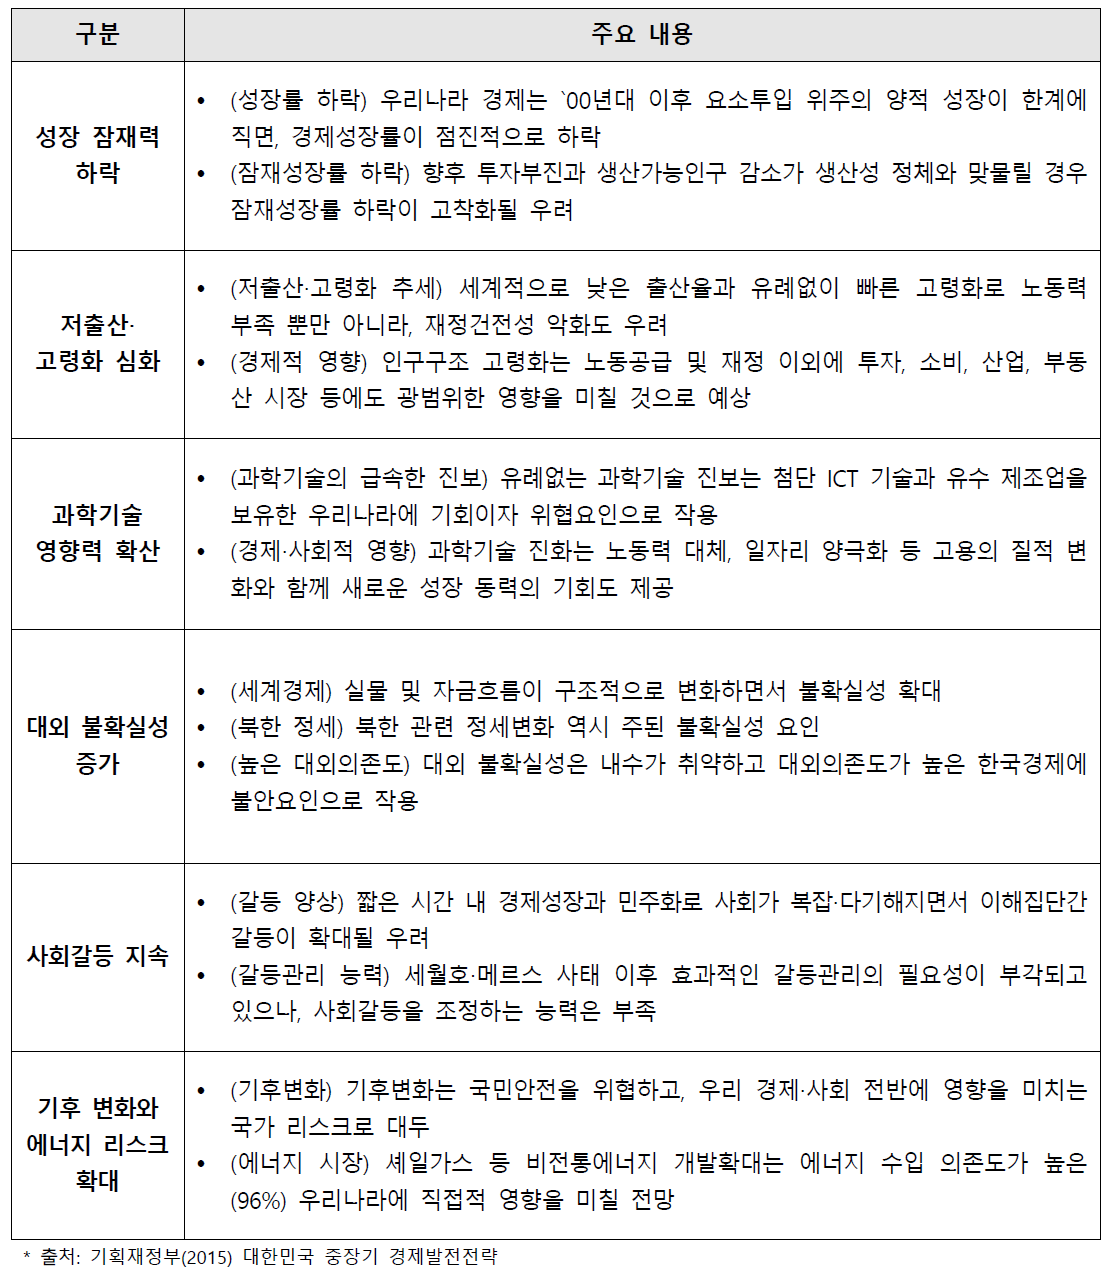 「중장기 경제발전전략」의 6대 한국 트렌드 분석